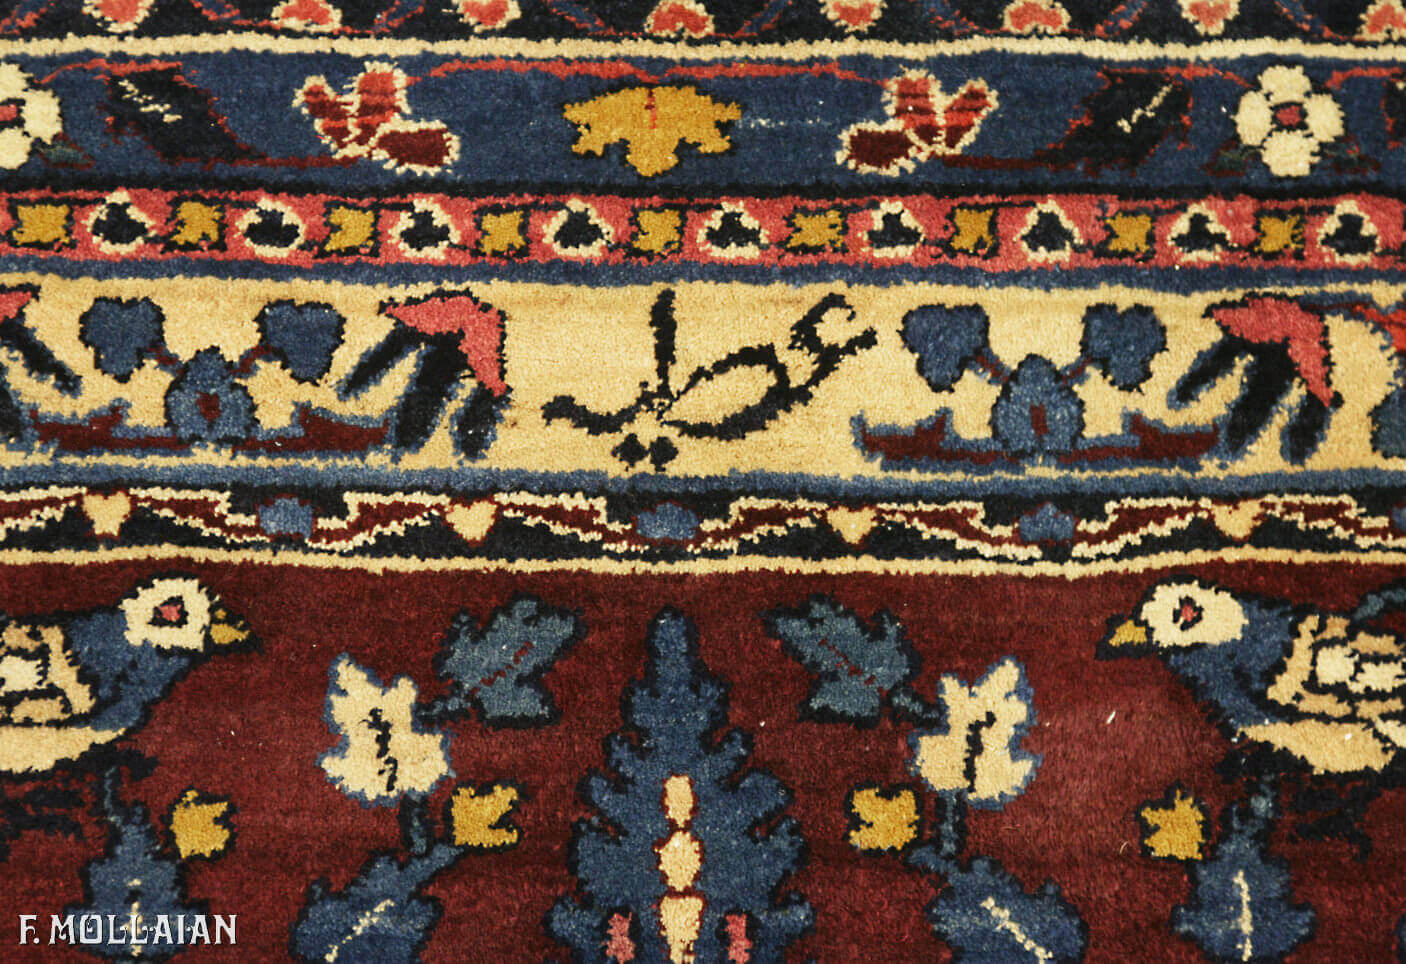 Antique Persian Yazd Carpet n°:16981485